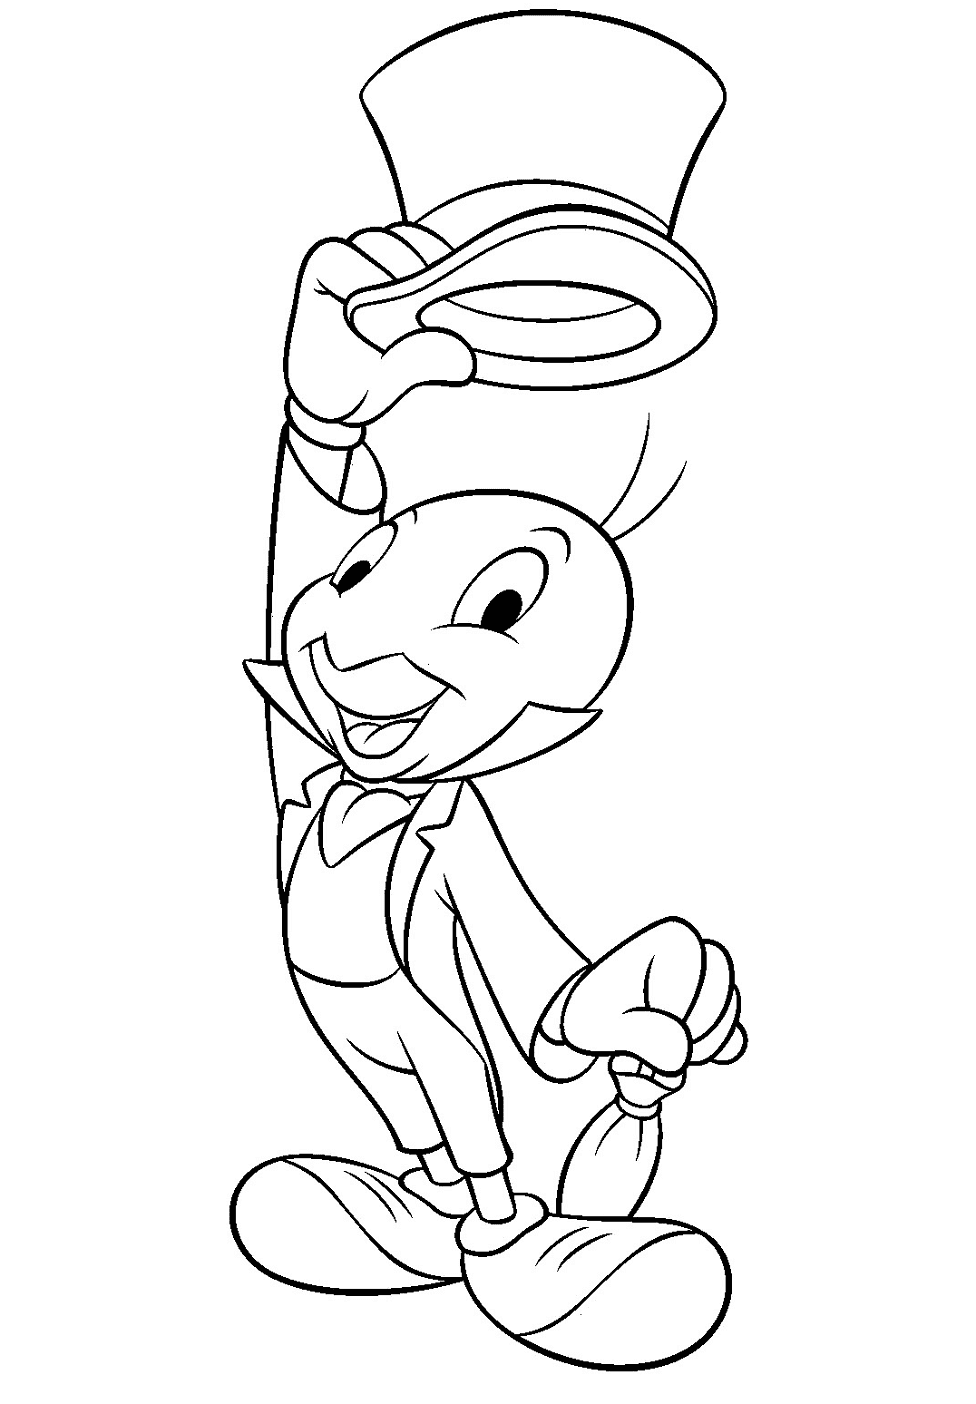 Grillo Jiminy di Pinocchio da colorare